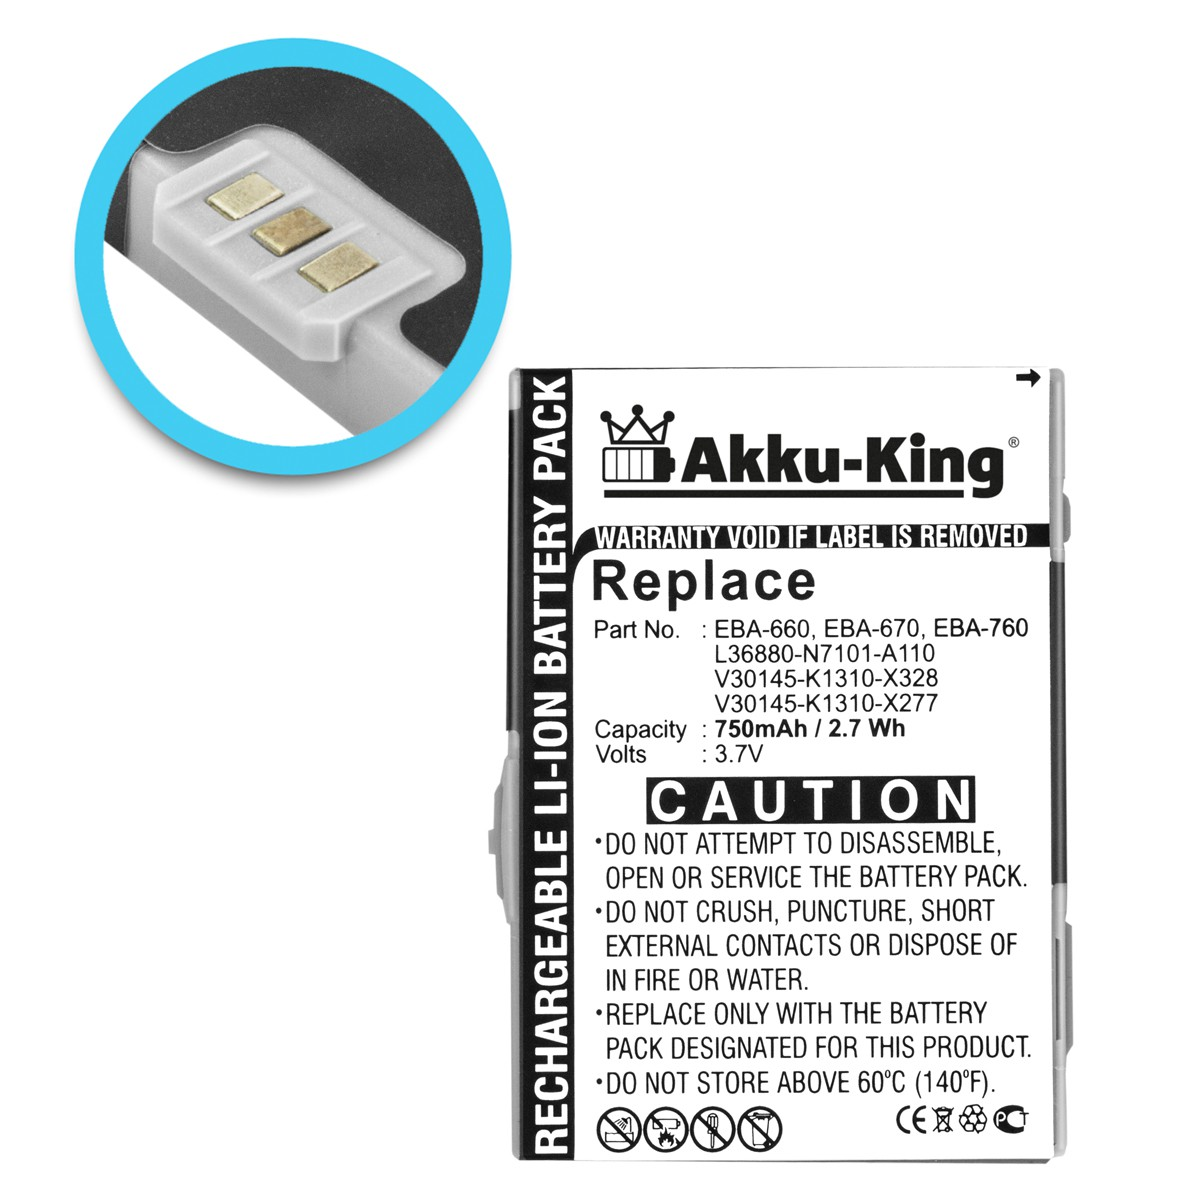 AKKU-KING kompatibel Li-Ion Siemens 750mAh mit Handy-Akku, Akku Volt, EBA-660 3.7